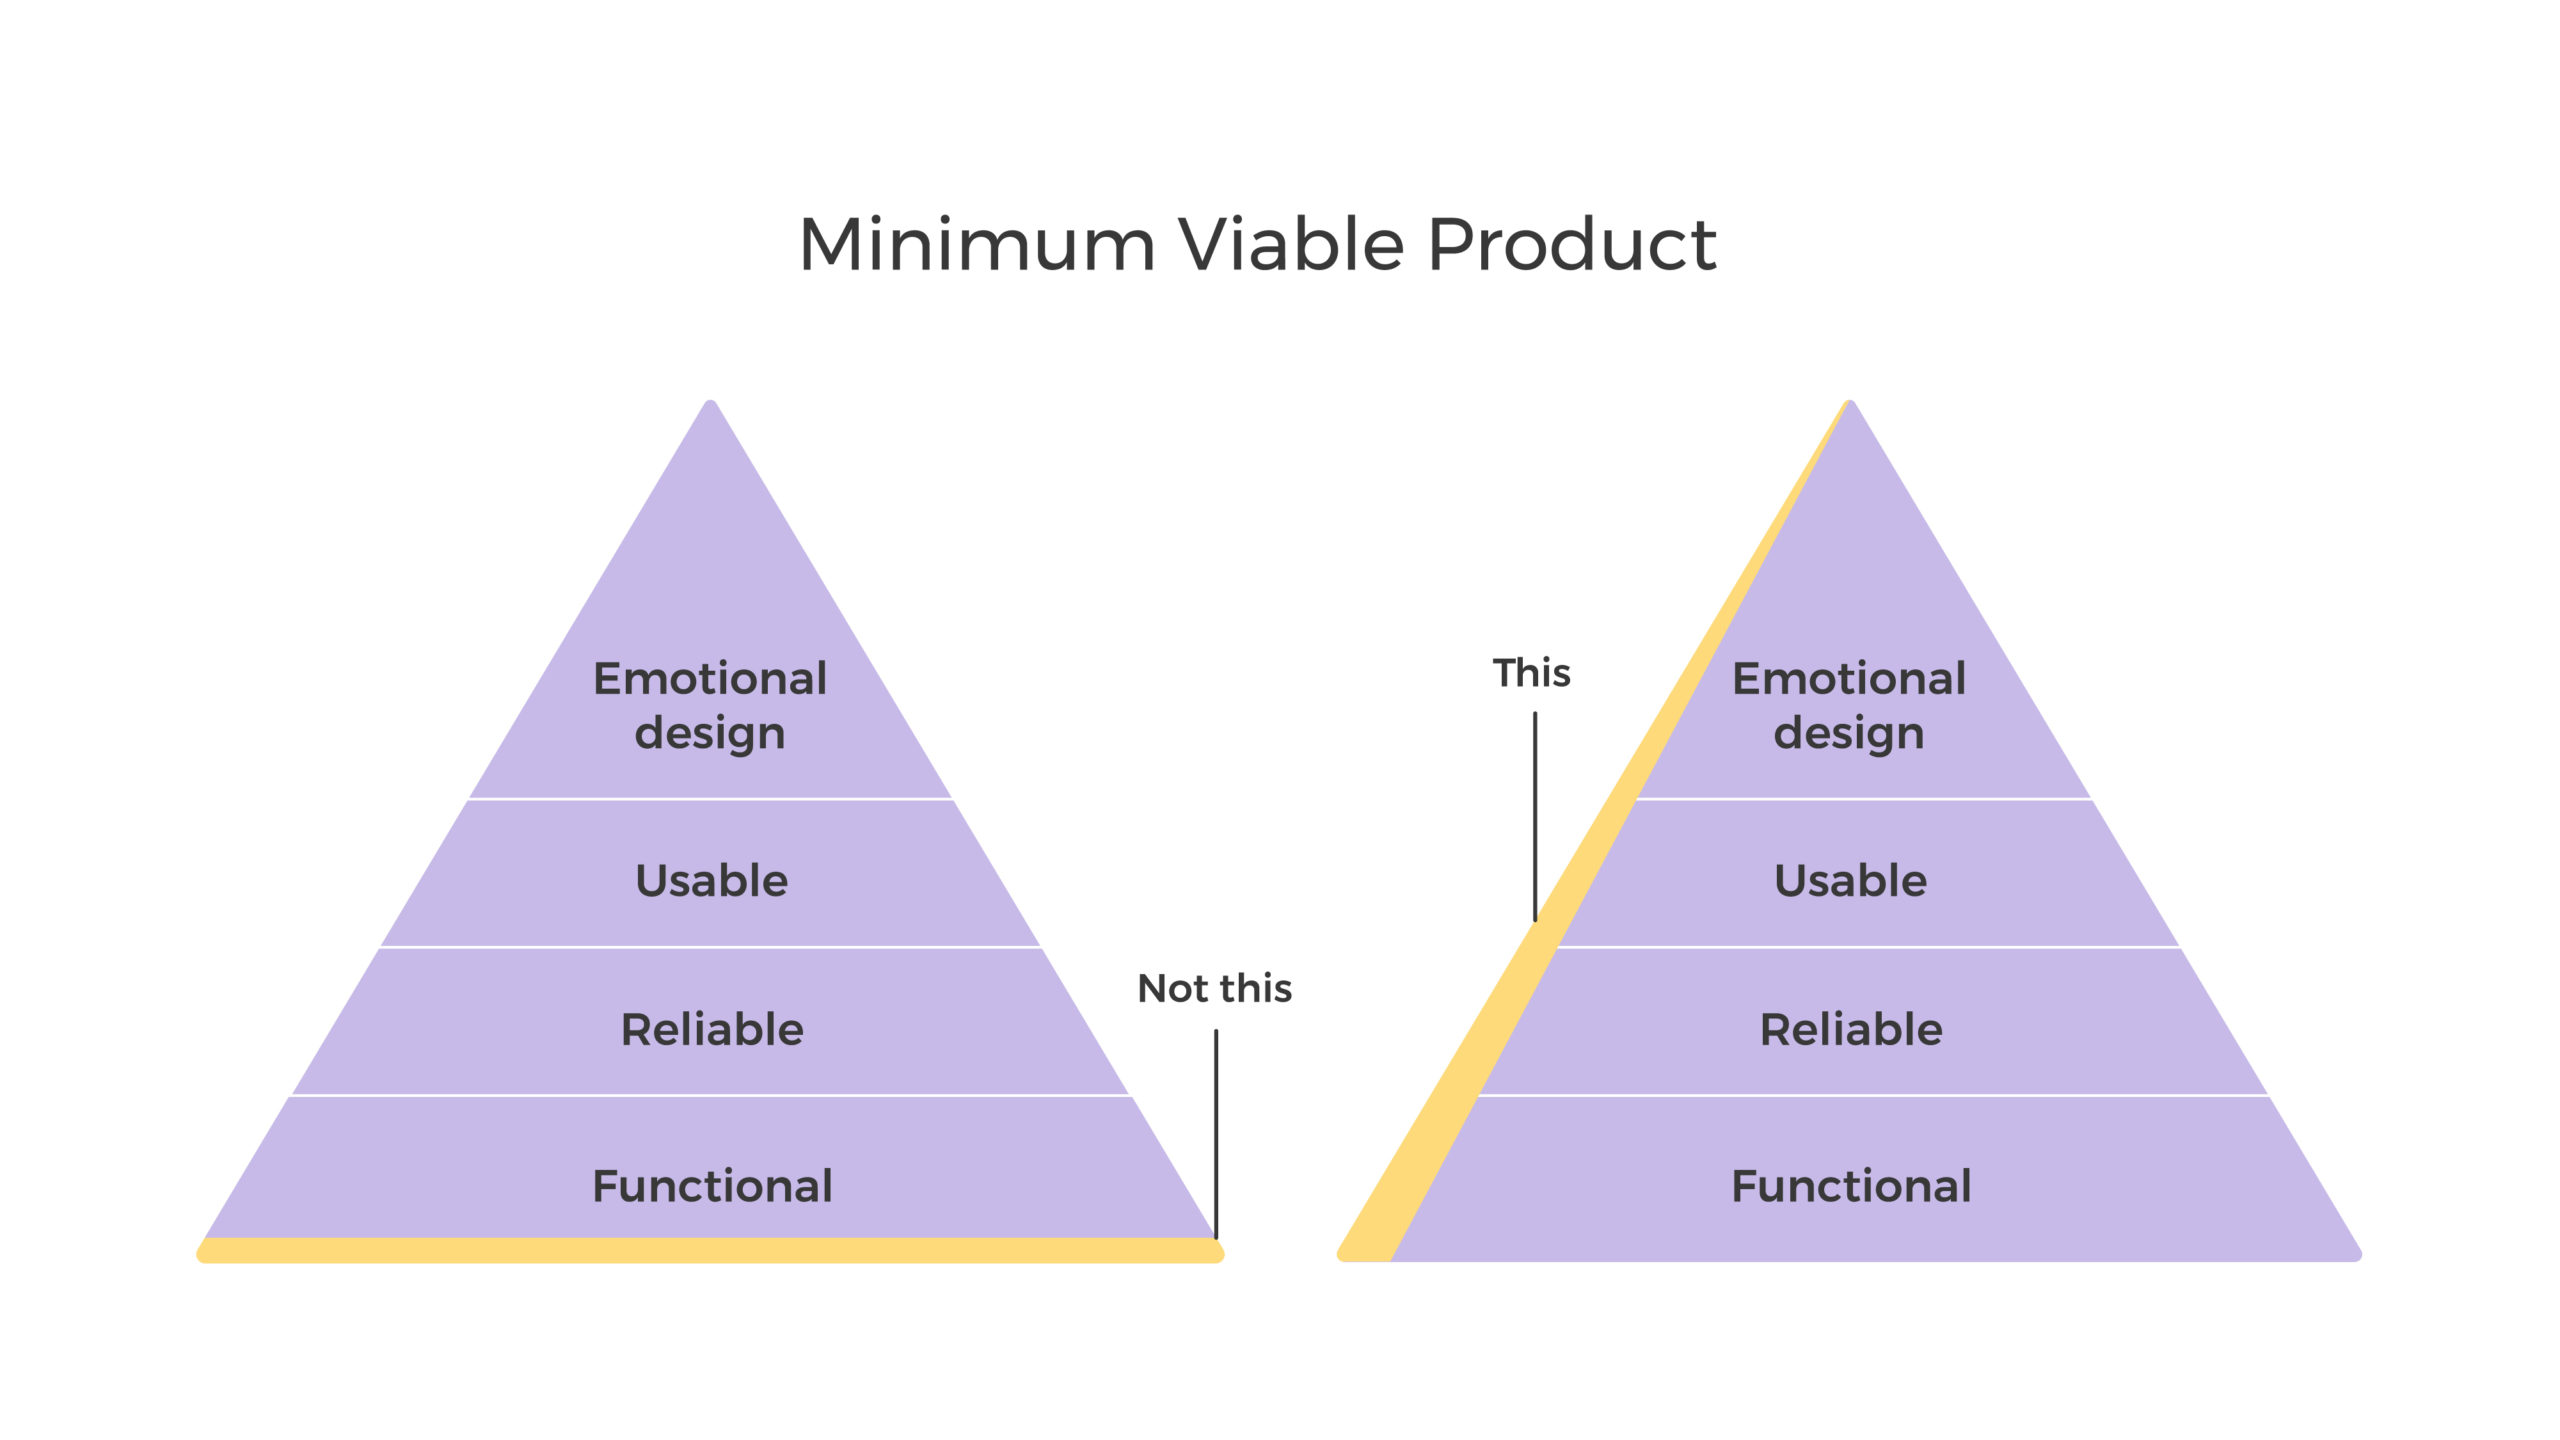 Minimum Viable Product pyramid